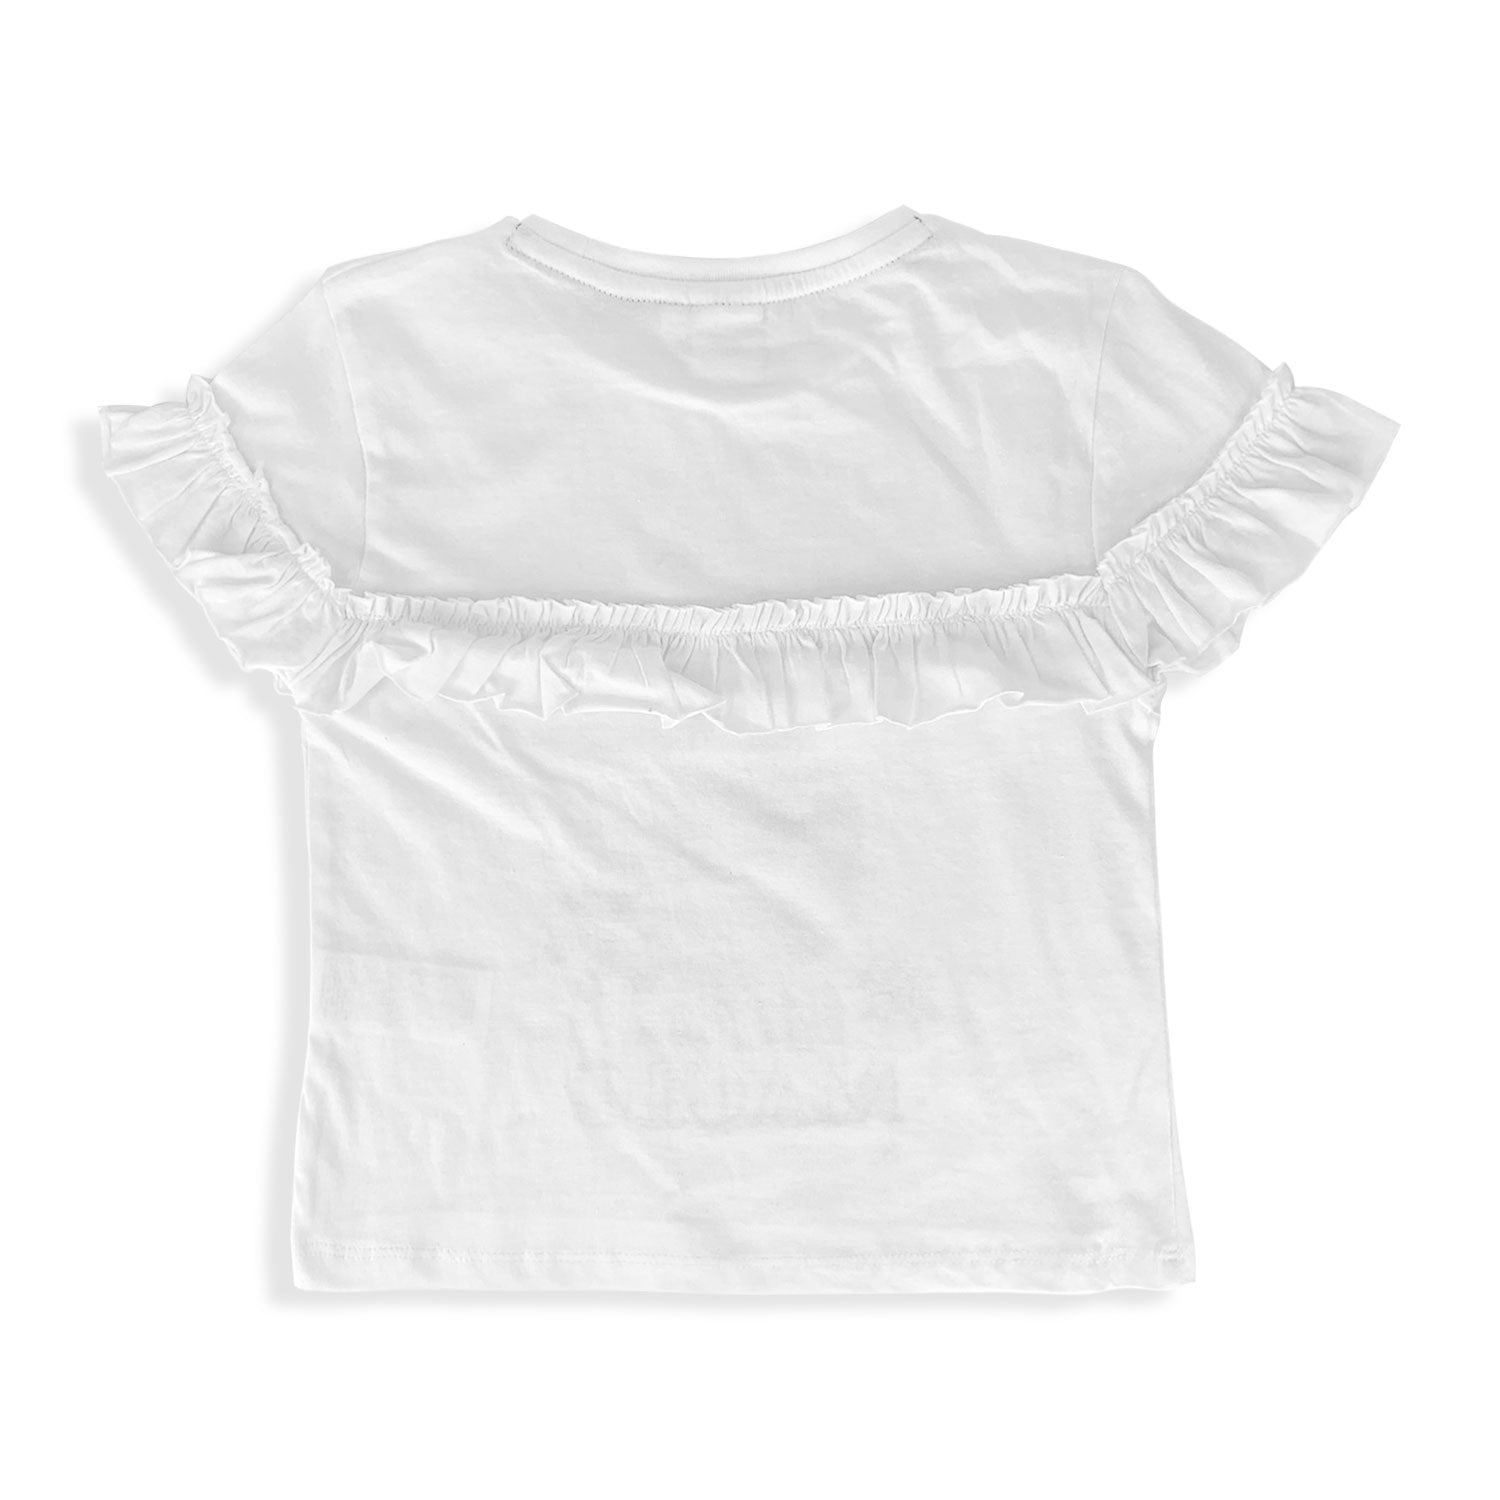 T-shirt Disney Frozen maglietta maniche corte maglia bimba cotone bambina 5363